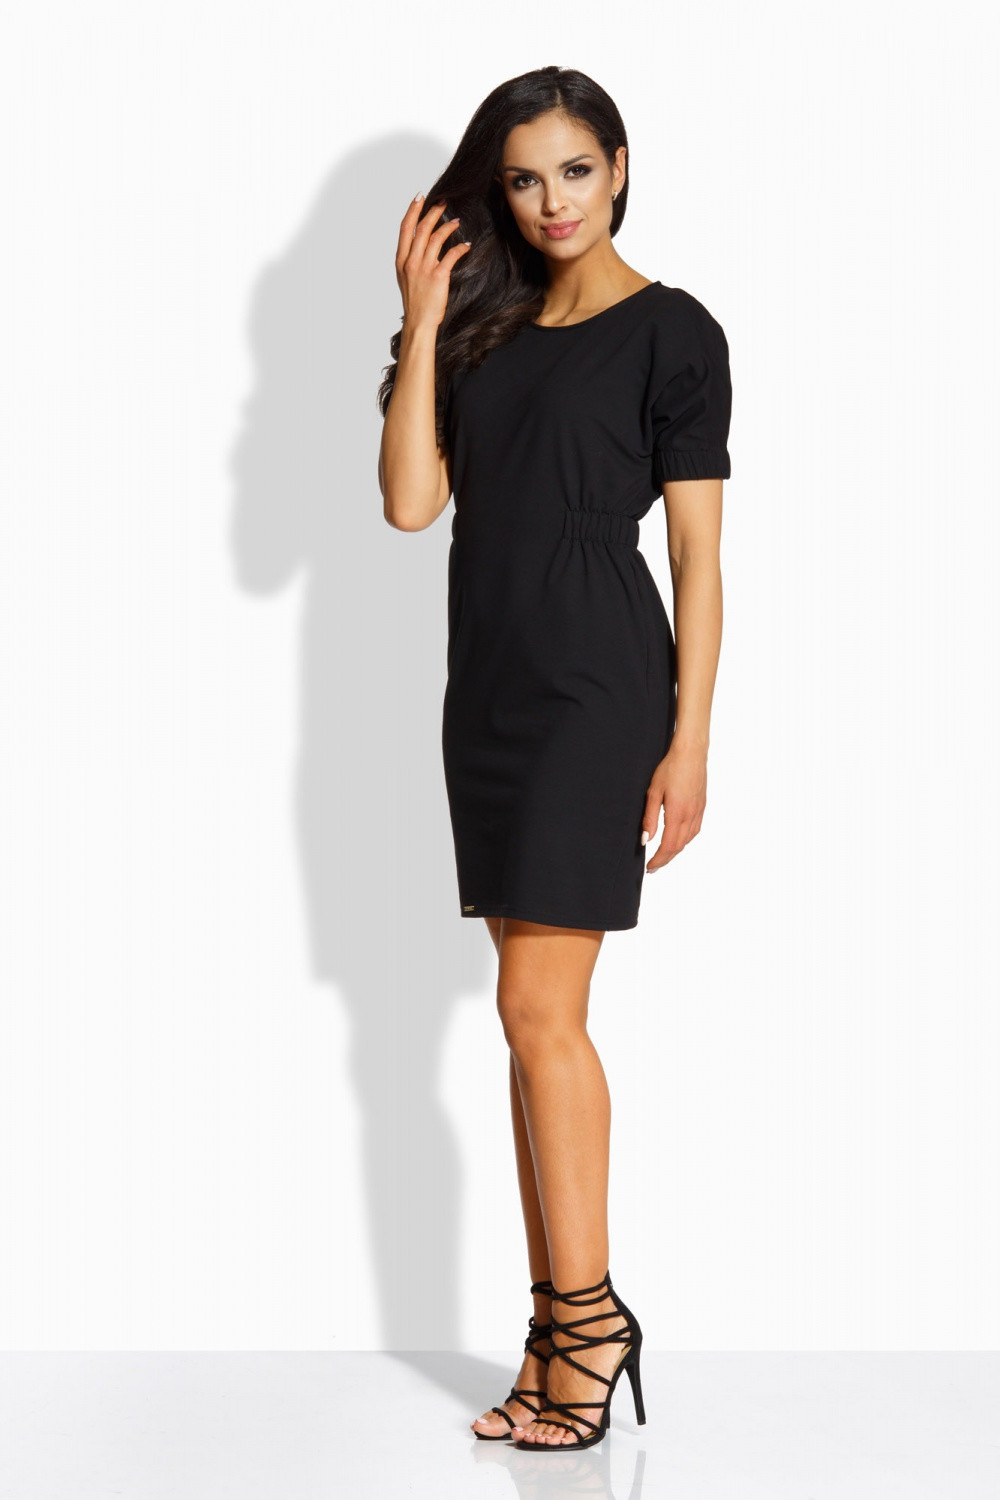 Dámské šaty model 8090940 - Lemoniade Velikost: L, Barvy: černá